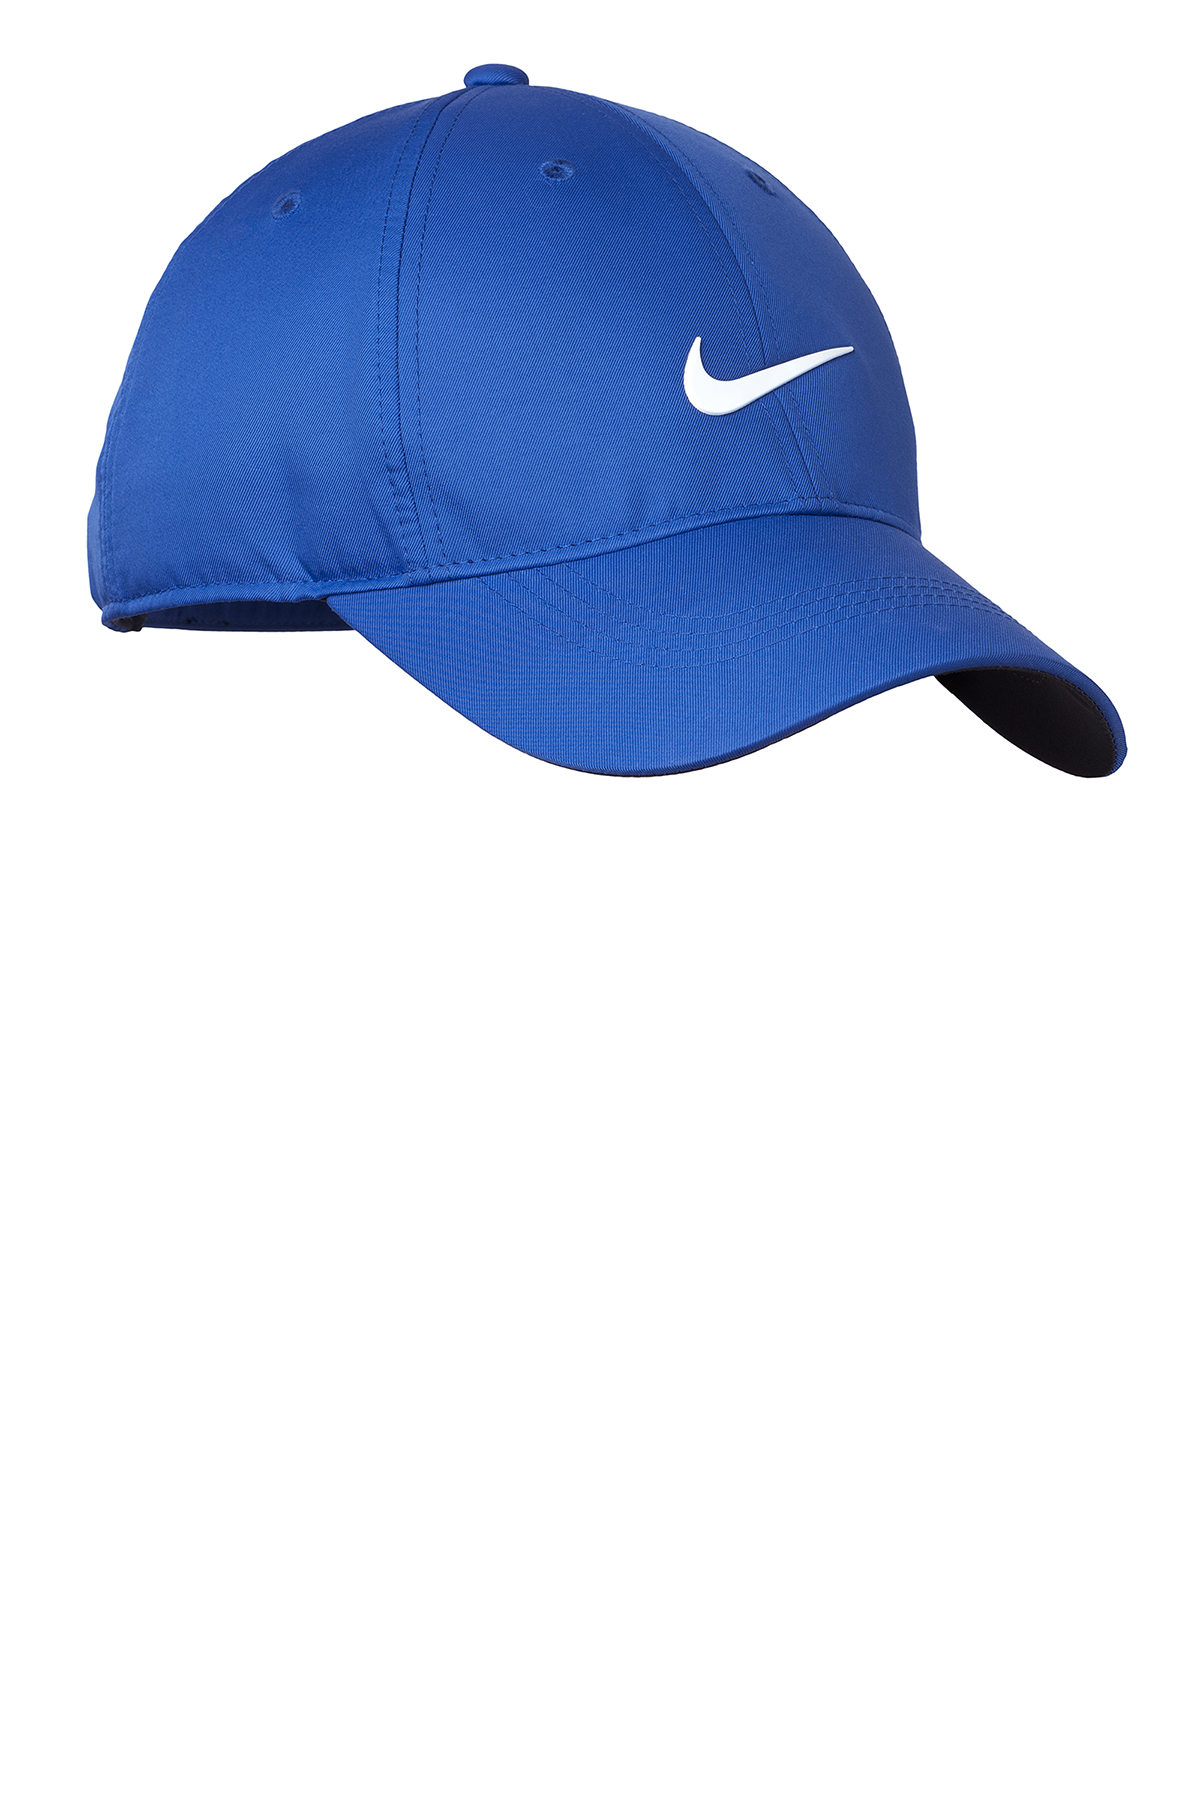 Nike Dri-FIT Swoosh Front Cap | Product | SanMar